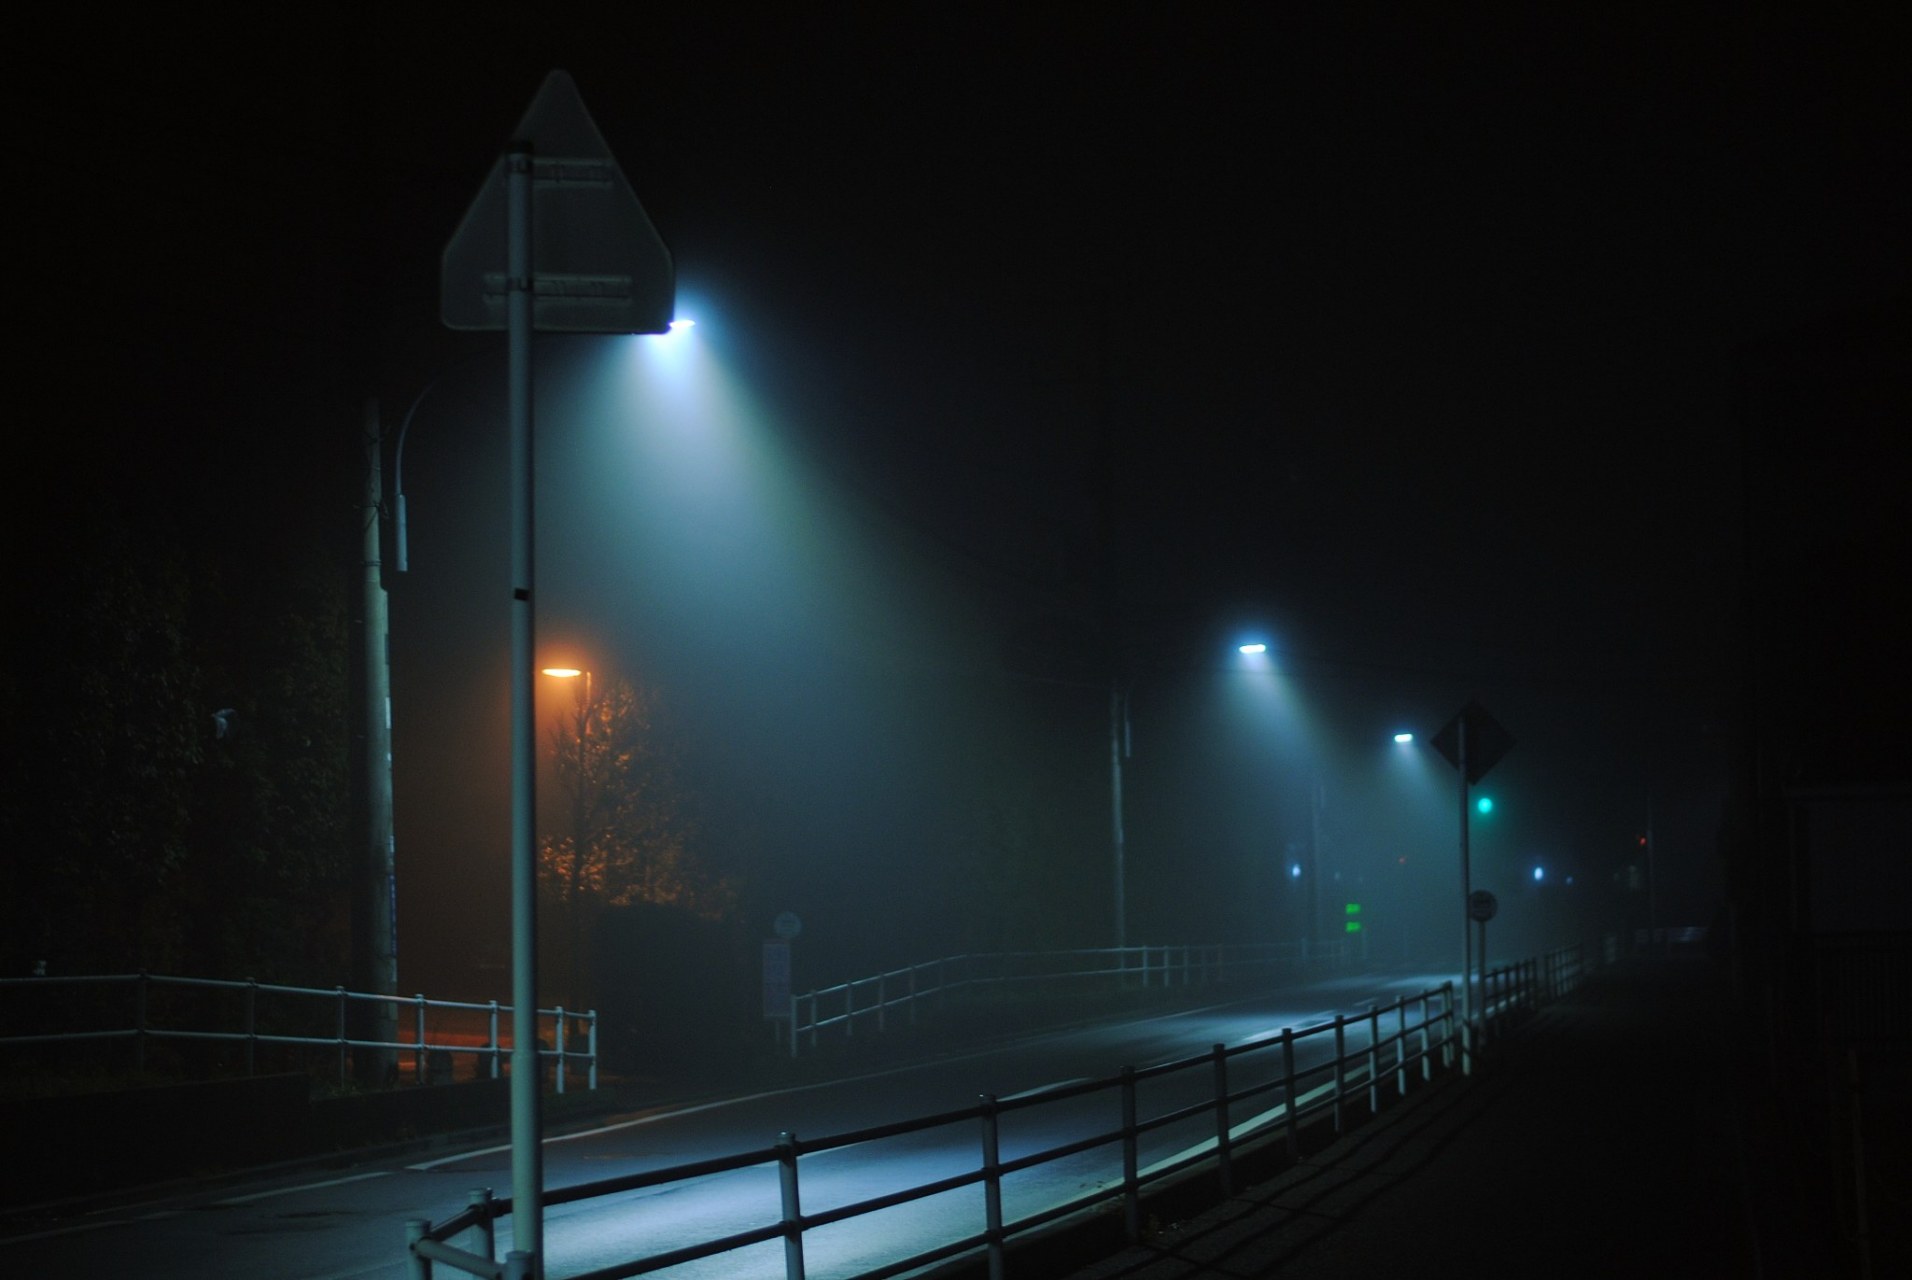 夜幕降临,城市里的车辆和行人变得稀少,只有寂静的街道和微弱的灯光